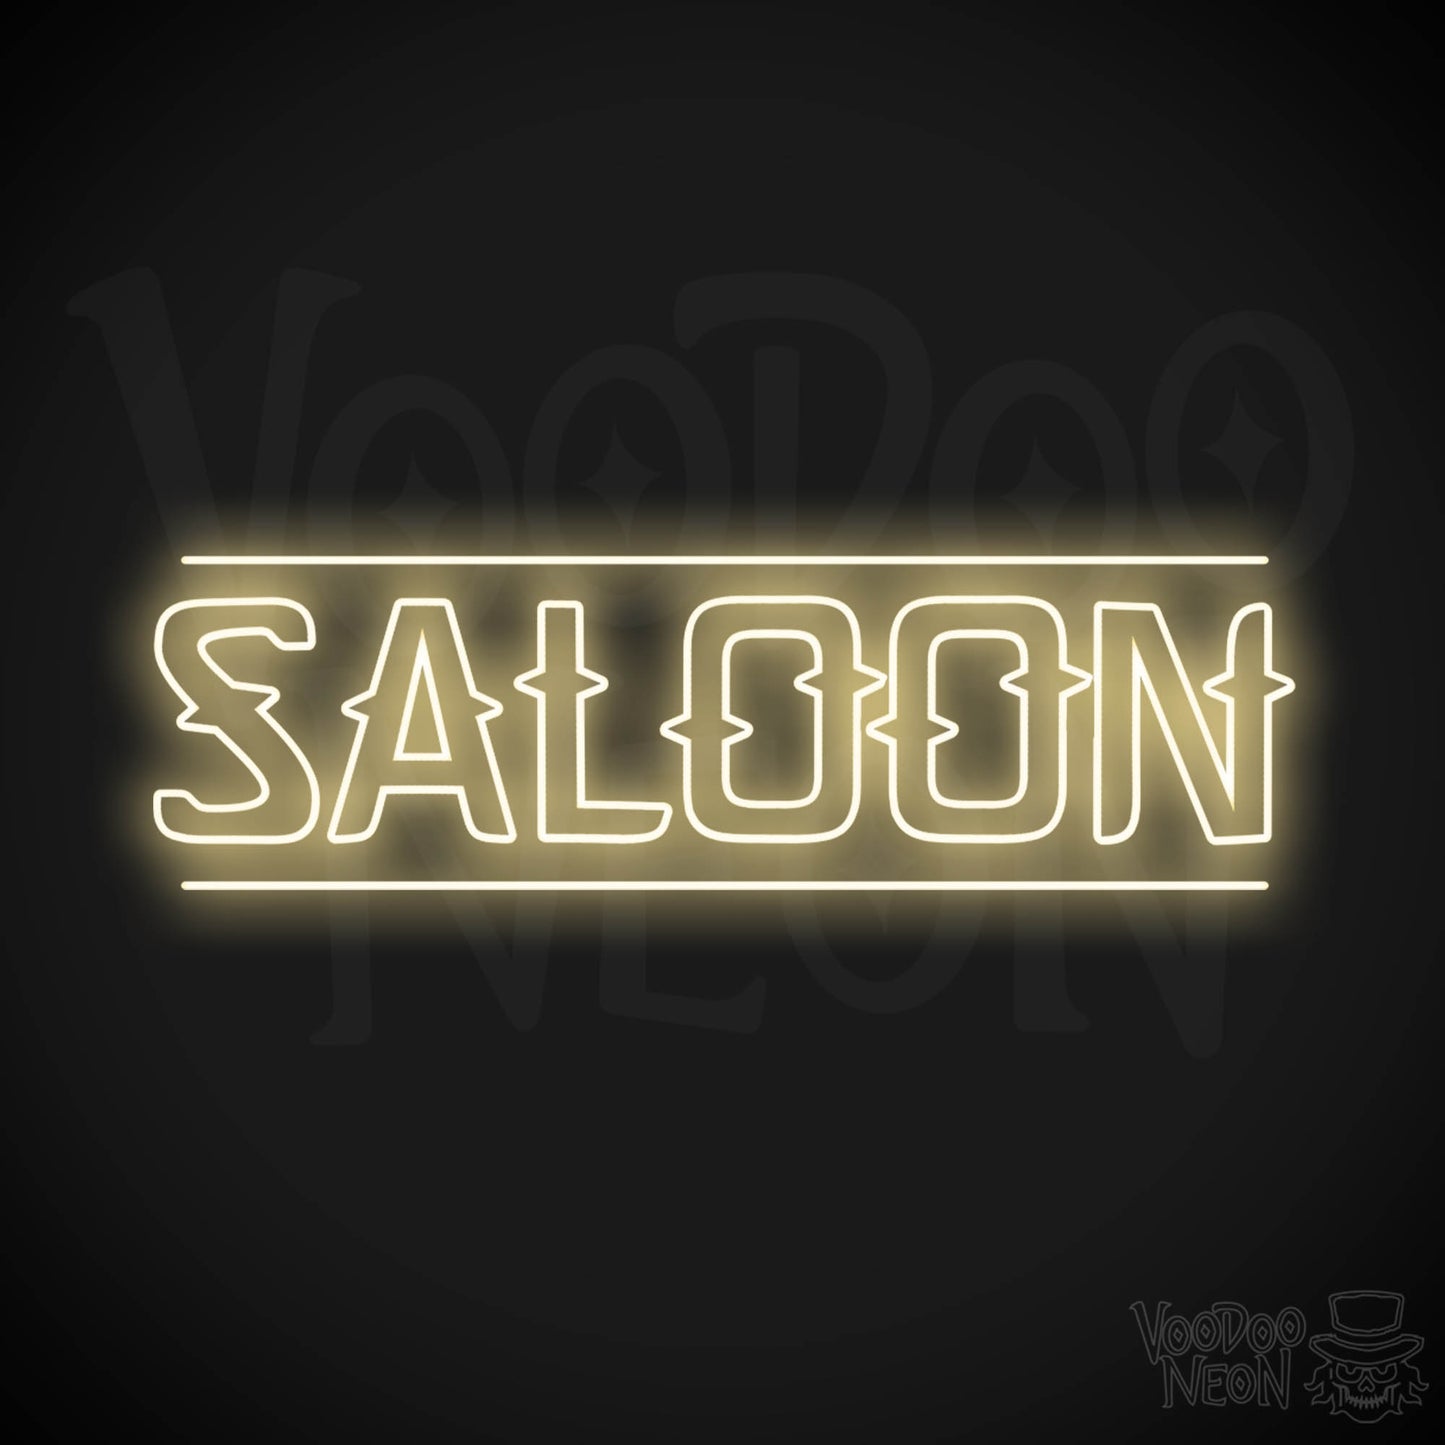 Saloon LED Neon - Warm White